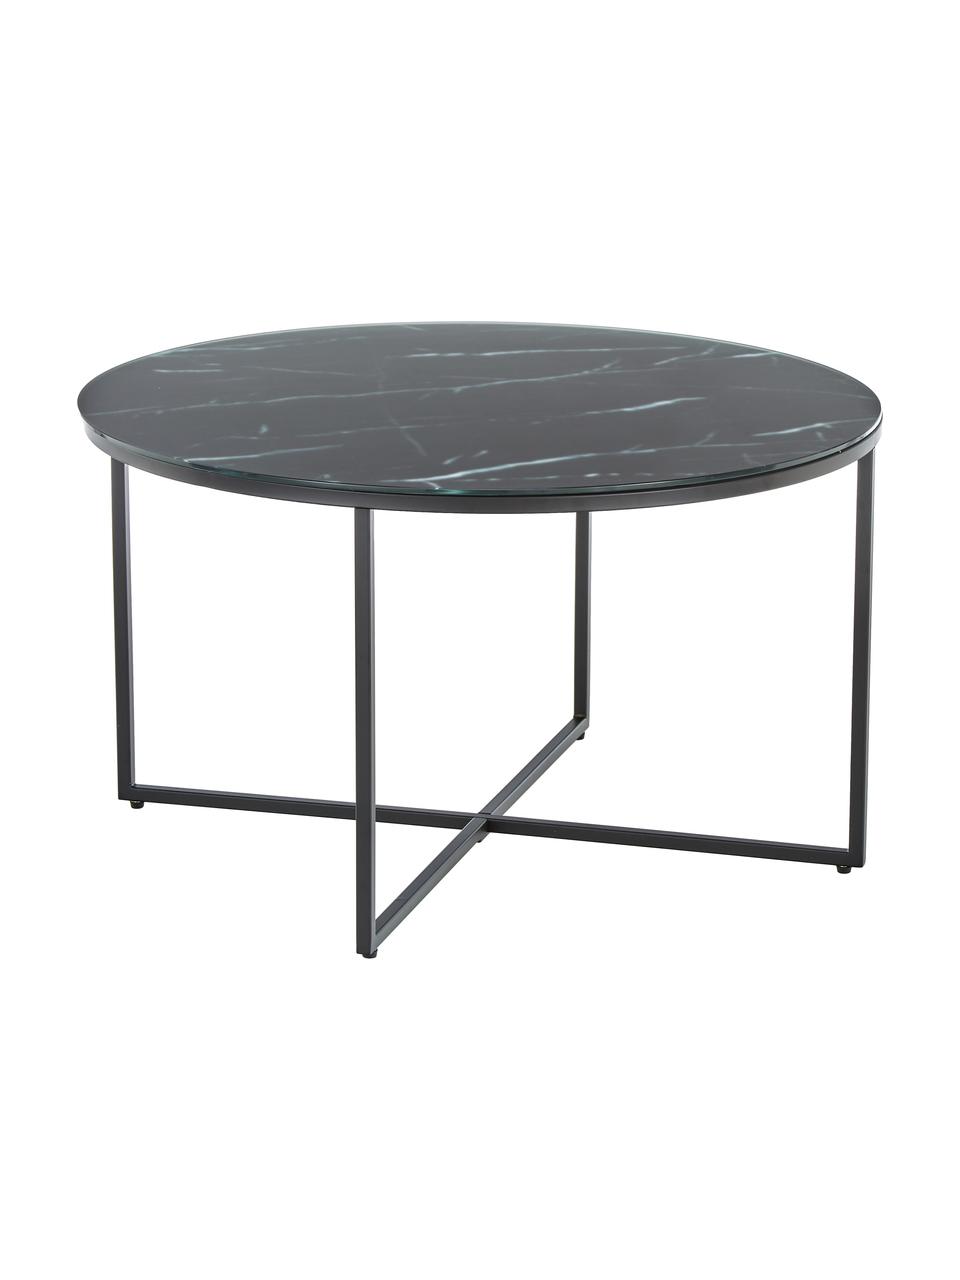 Okrúhly konferenčný stolík so sklenenou doskou s mramorovým vzhľadom Antigua, Mramorový vzhľad, čierna, Ø 80 cm